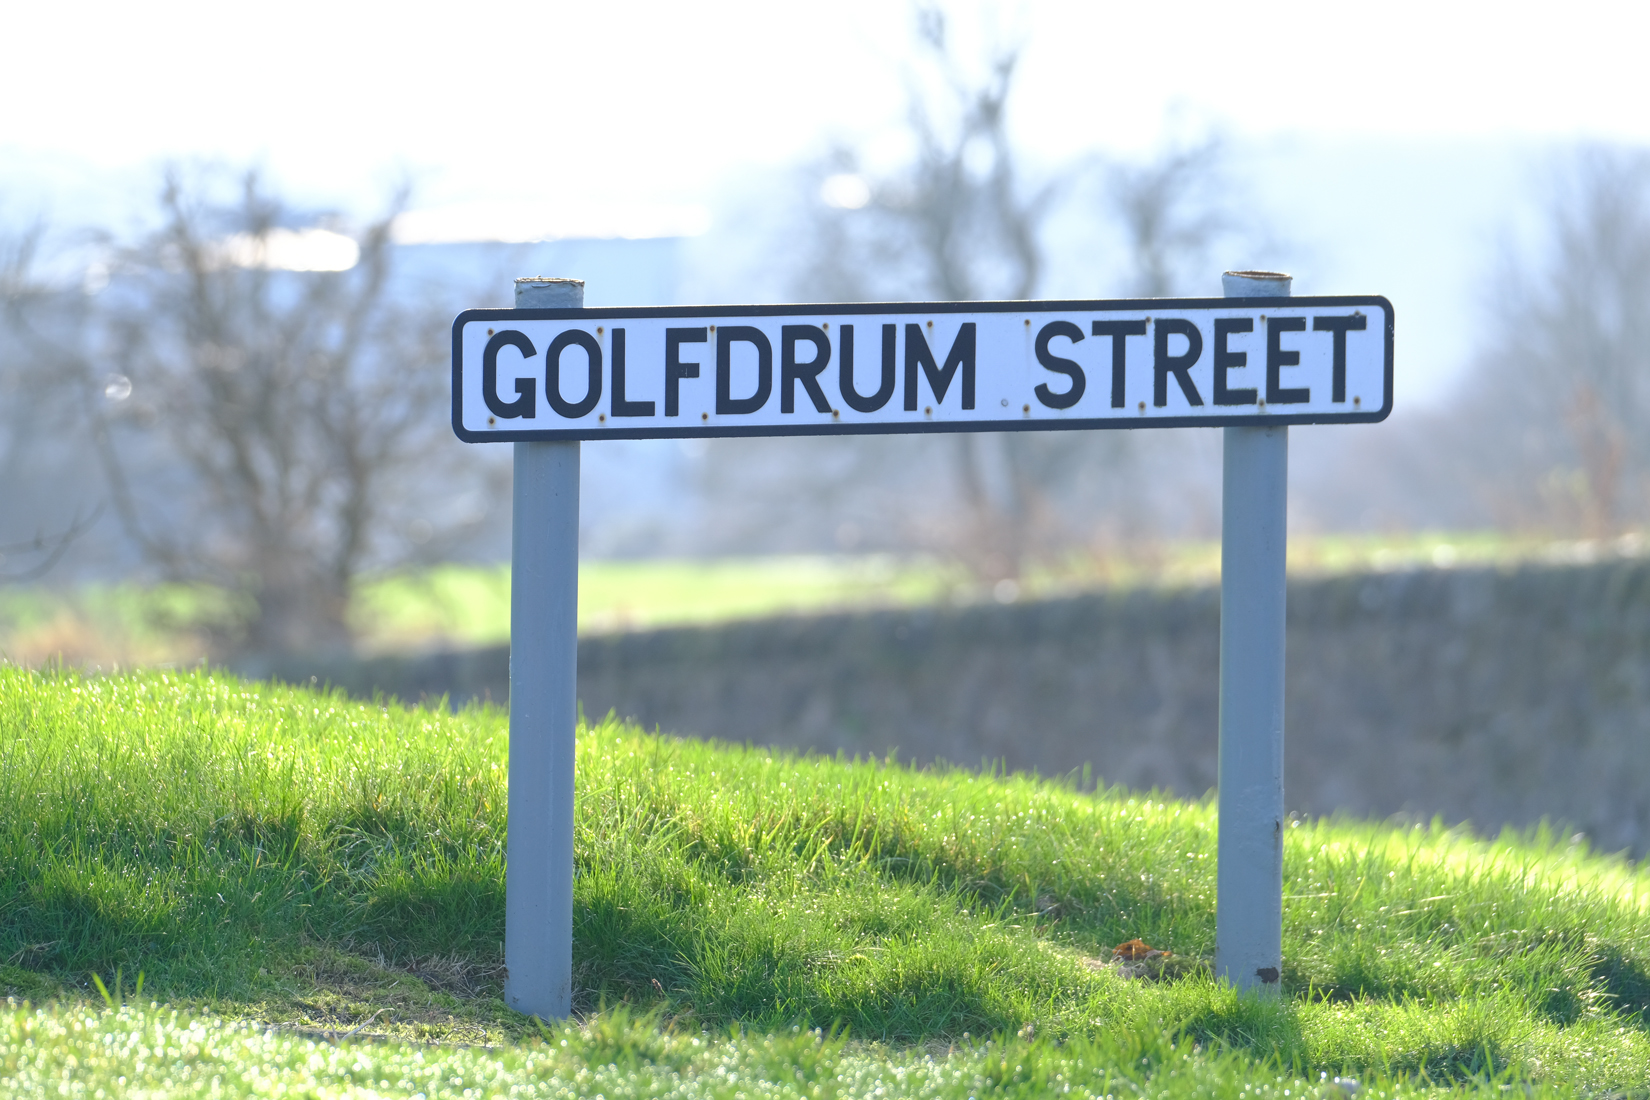 Street sign called Golfdrum Street